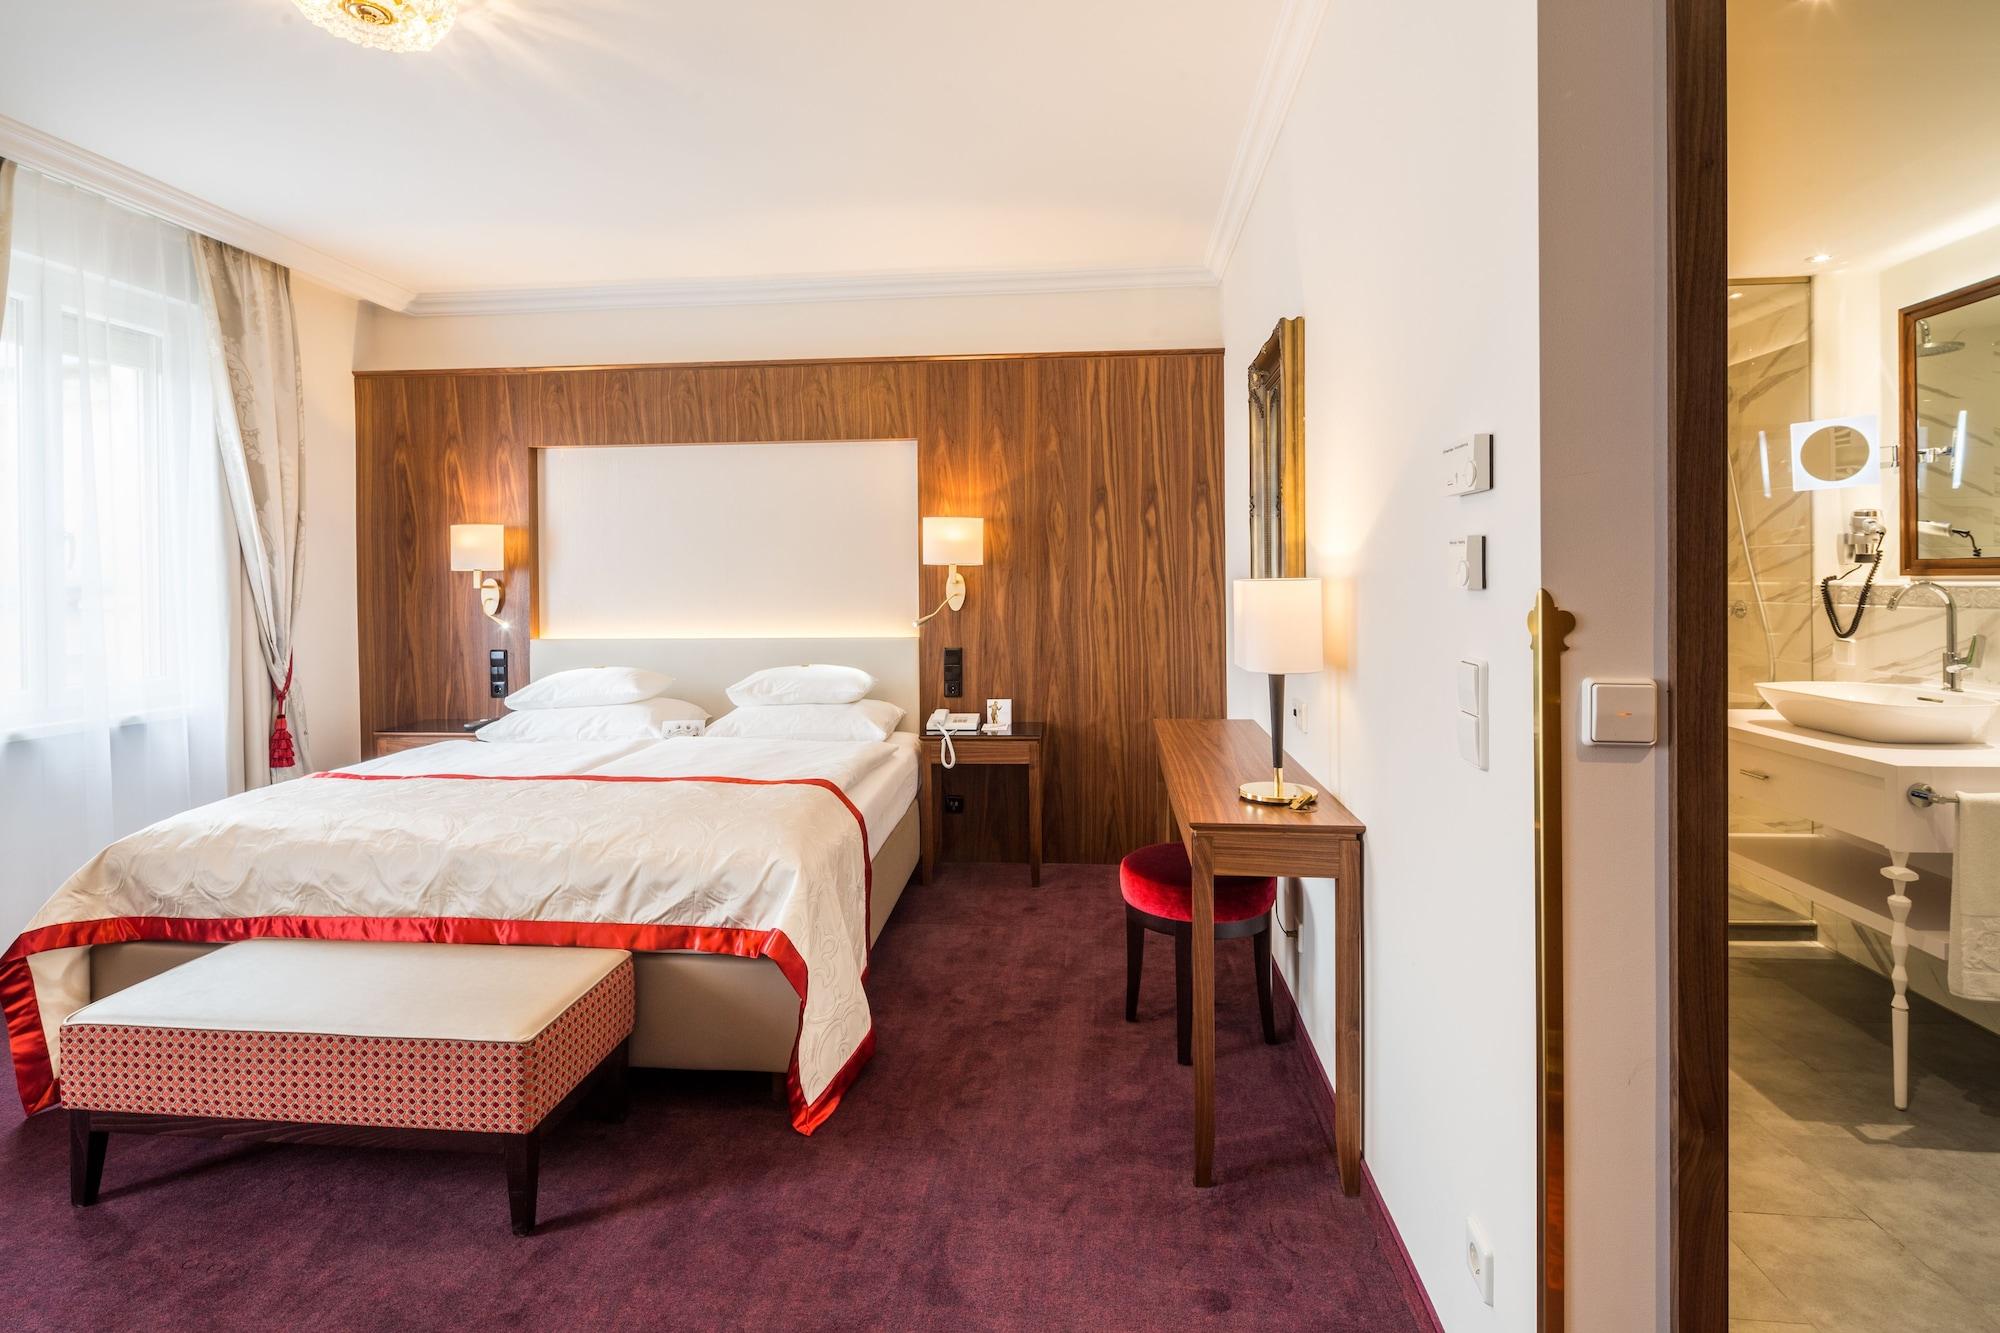 Hotel Stefanie - Vienna'S Oldest Hotel Room photo